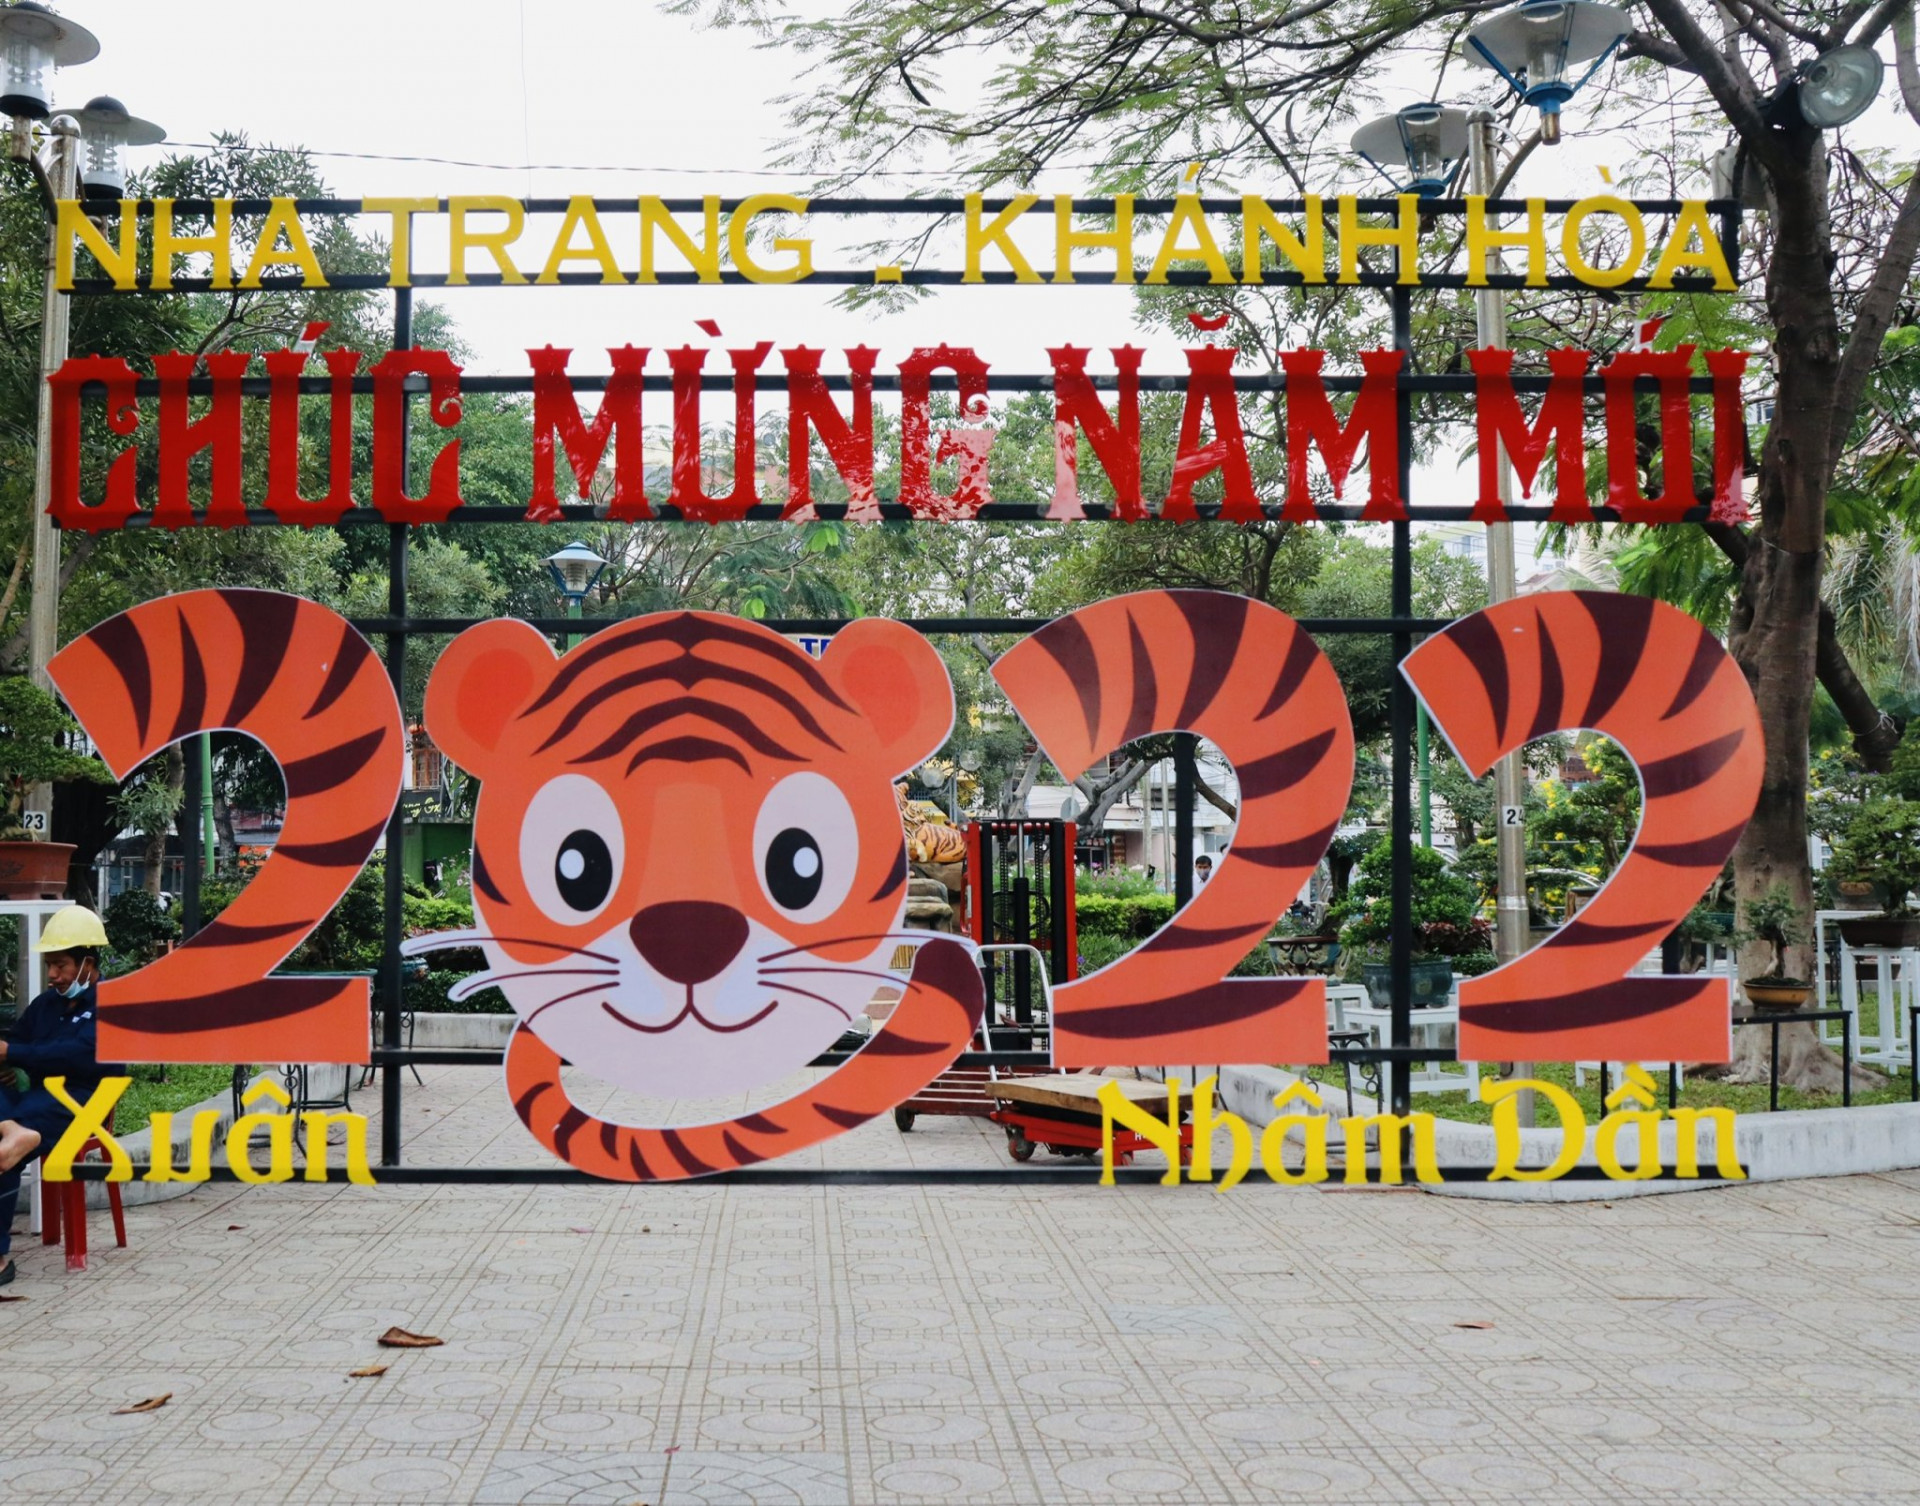 Dãy số 2022 ở Hội hoa Xuân Nha Trang - Khánh Hòa lấy cảm hứng từ một chú hổ con